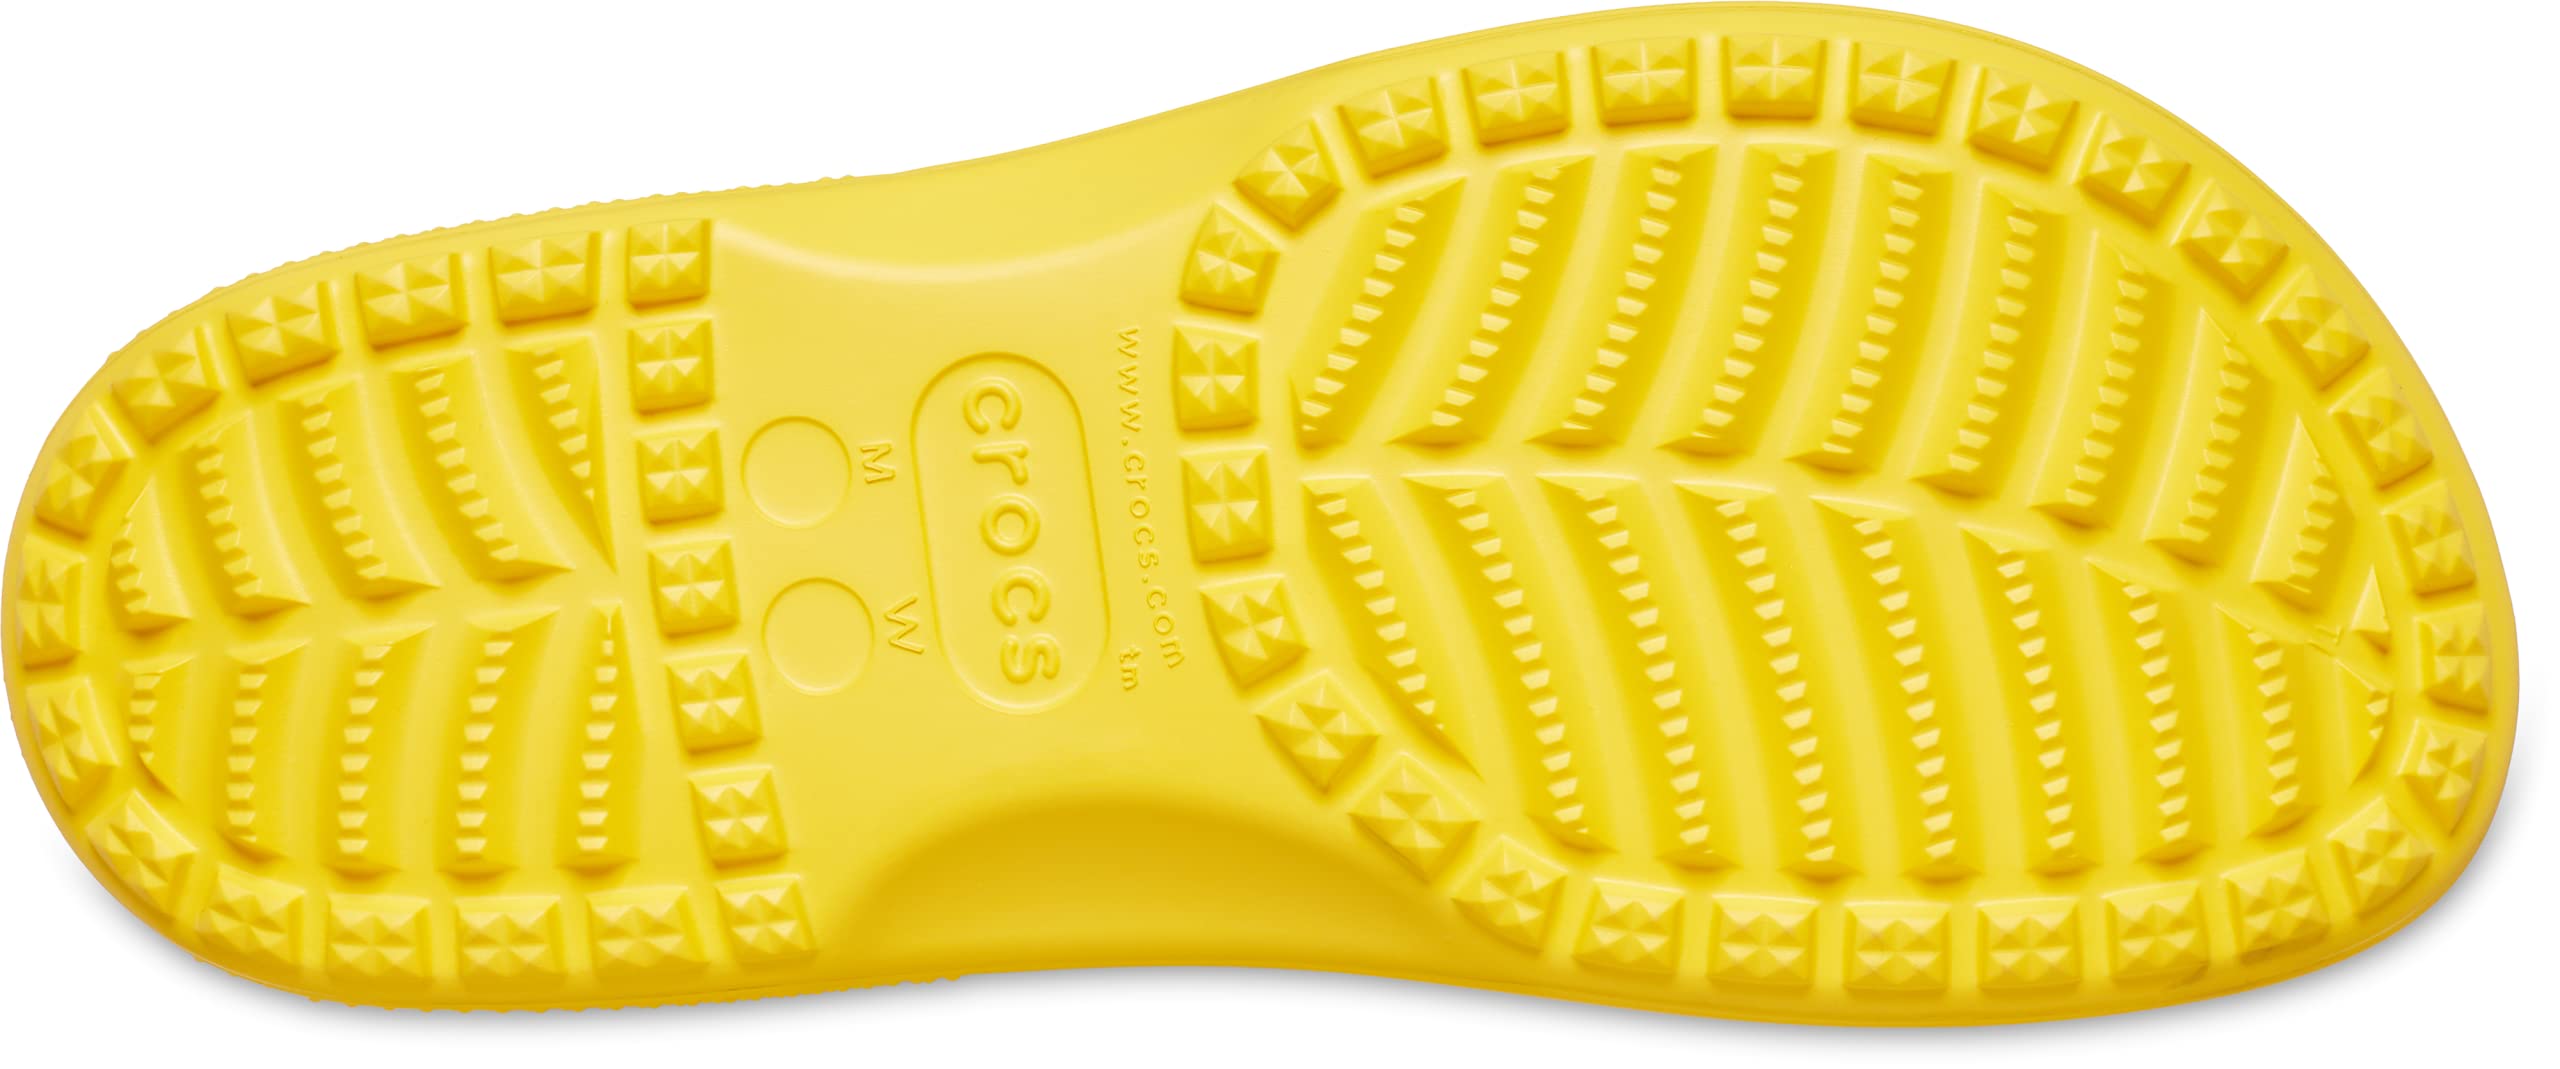 Crocs Unisex-Adult Classic Rain Boots